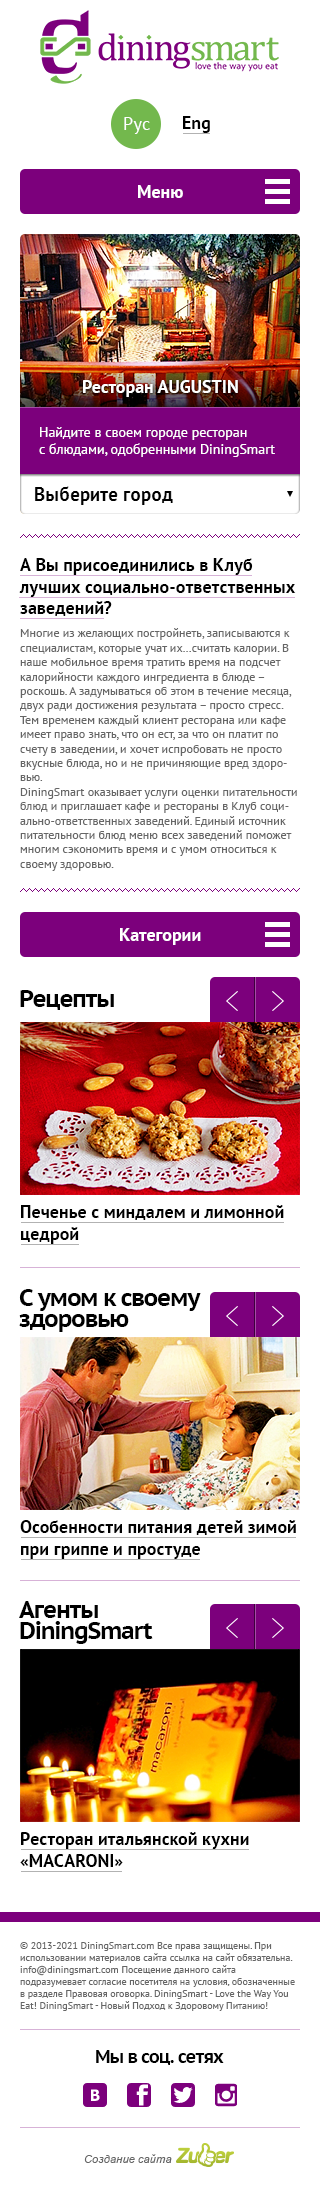 Главная страница мобильной версии сайта «Diningsmart»